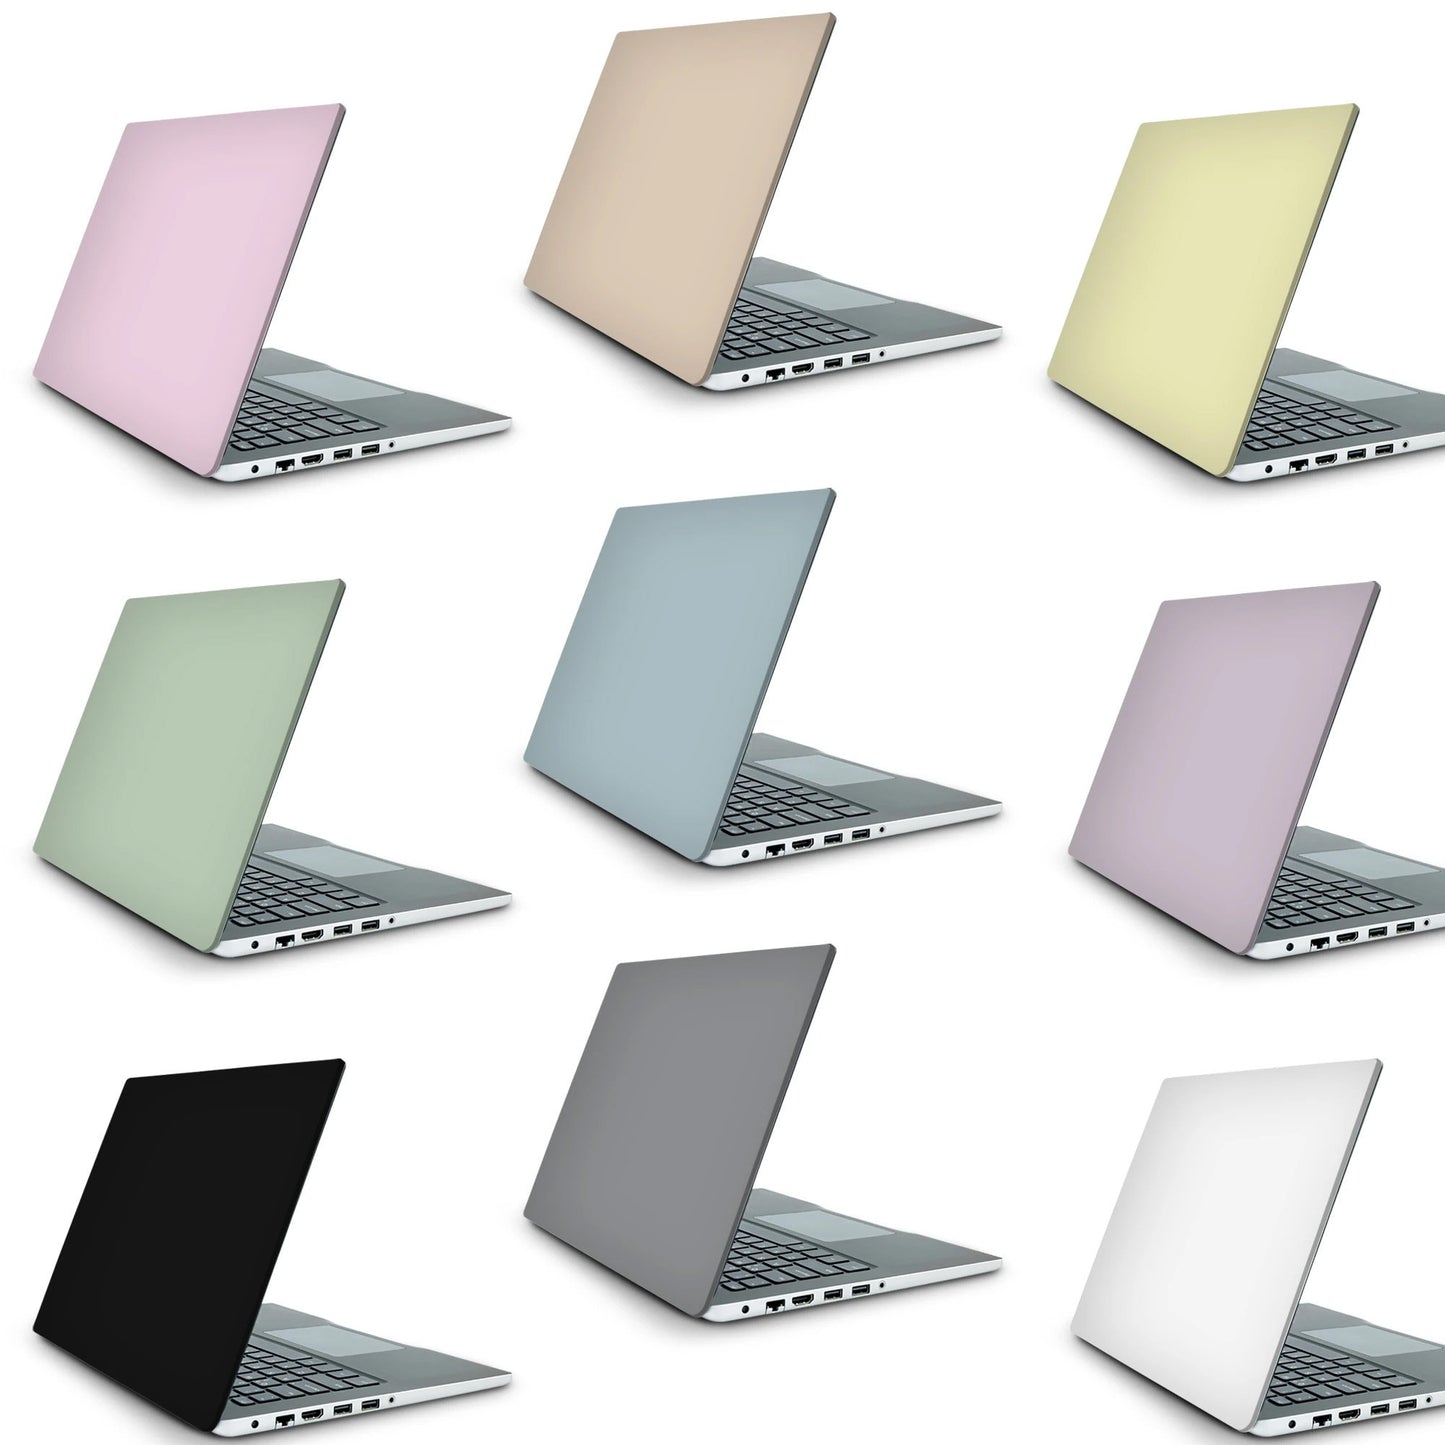 Abstract Desert Laptop Skin, Laptop Cover, Laptop Skins, Removable Laptop Skins, Laptop Decal, Customized Laptop Skin, Laptop Stickers 172